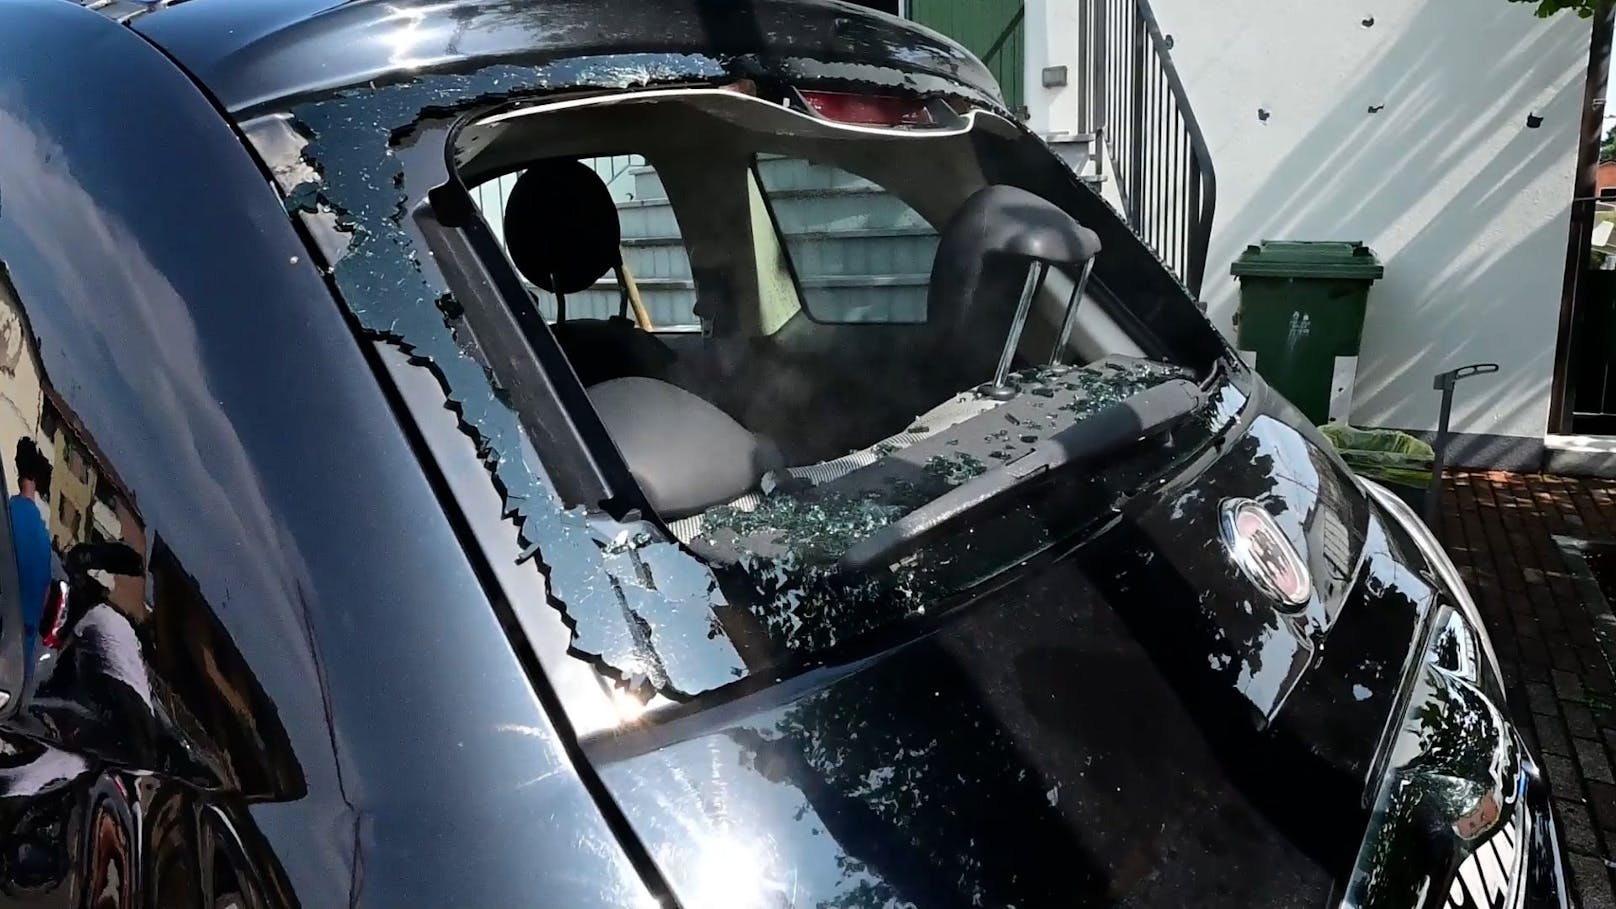 Extremer Hagelsturm in Urlaubsregion: Brutale Schäden in Italien – 10 cm Hagelbrocken zerschlagen Autos und Gebäude 